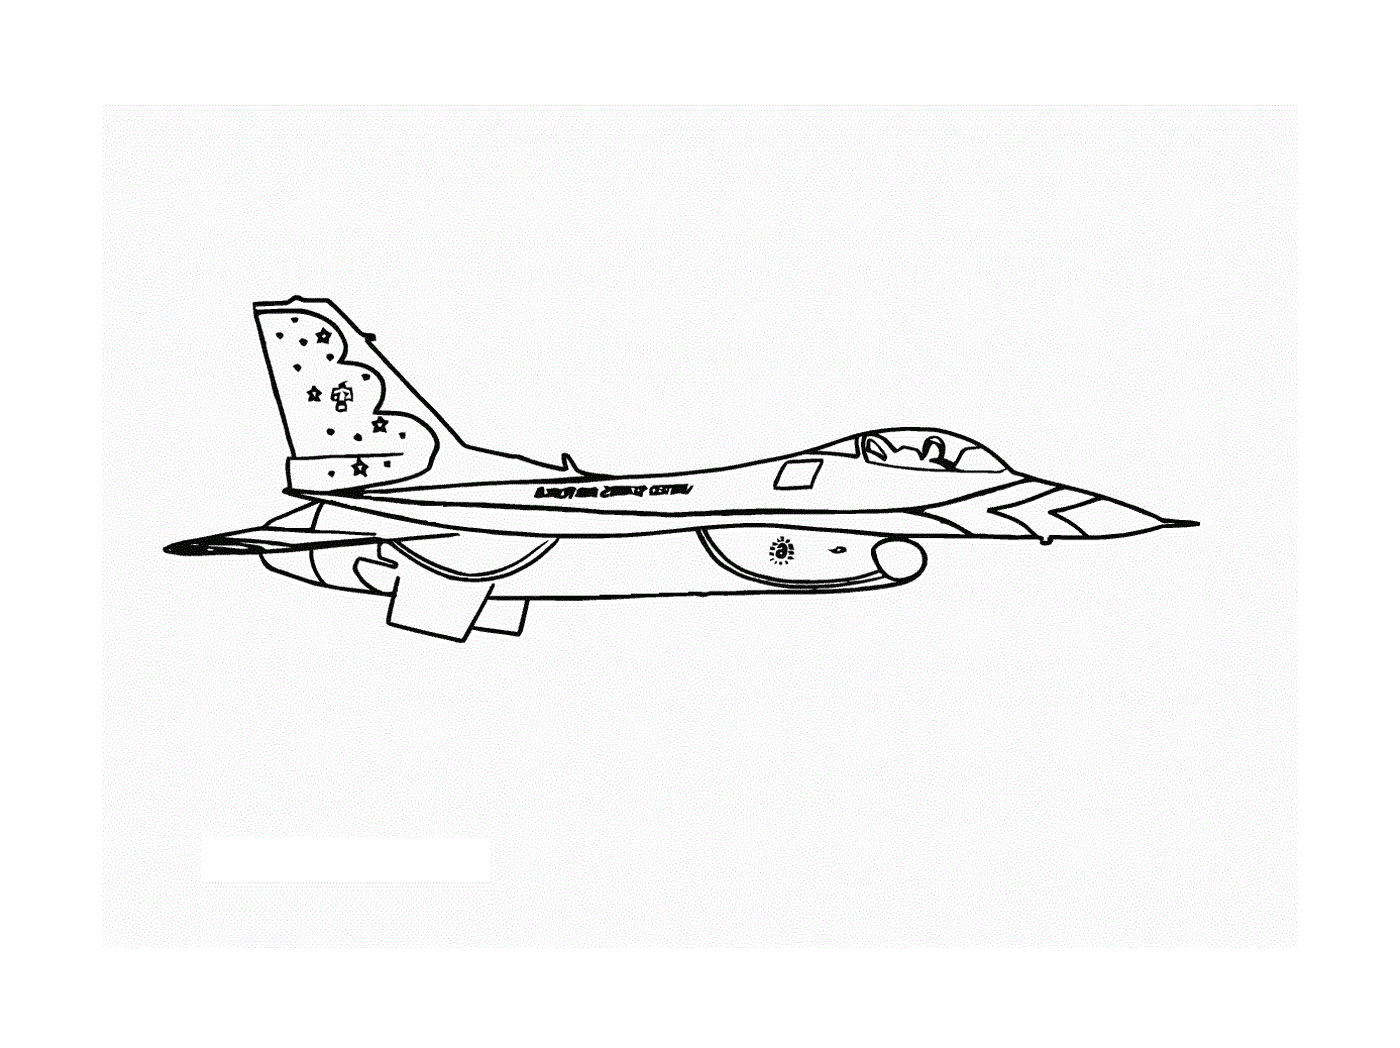   Un avion de guerre est dessiné 